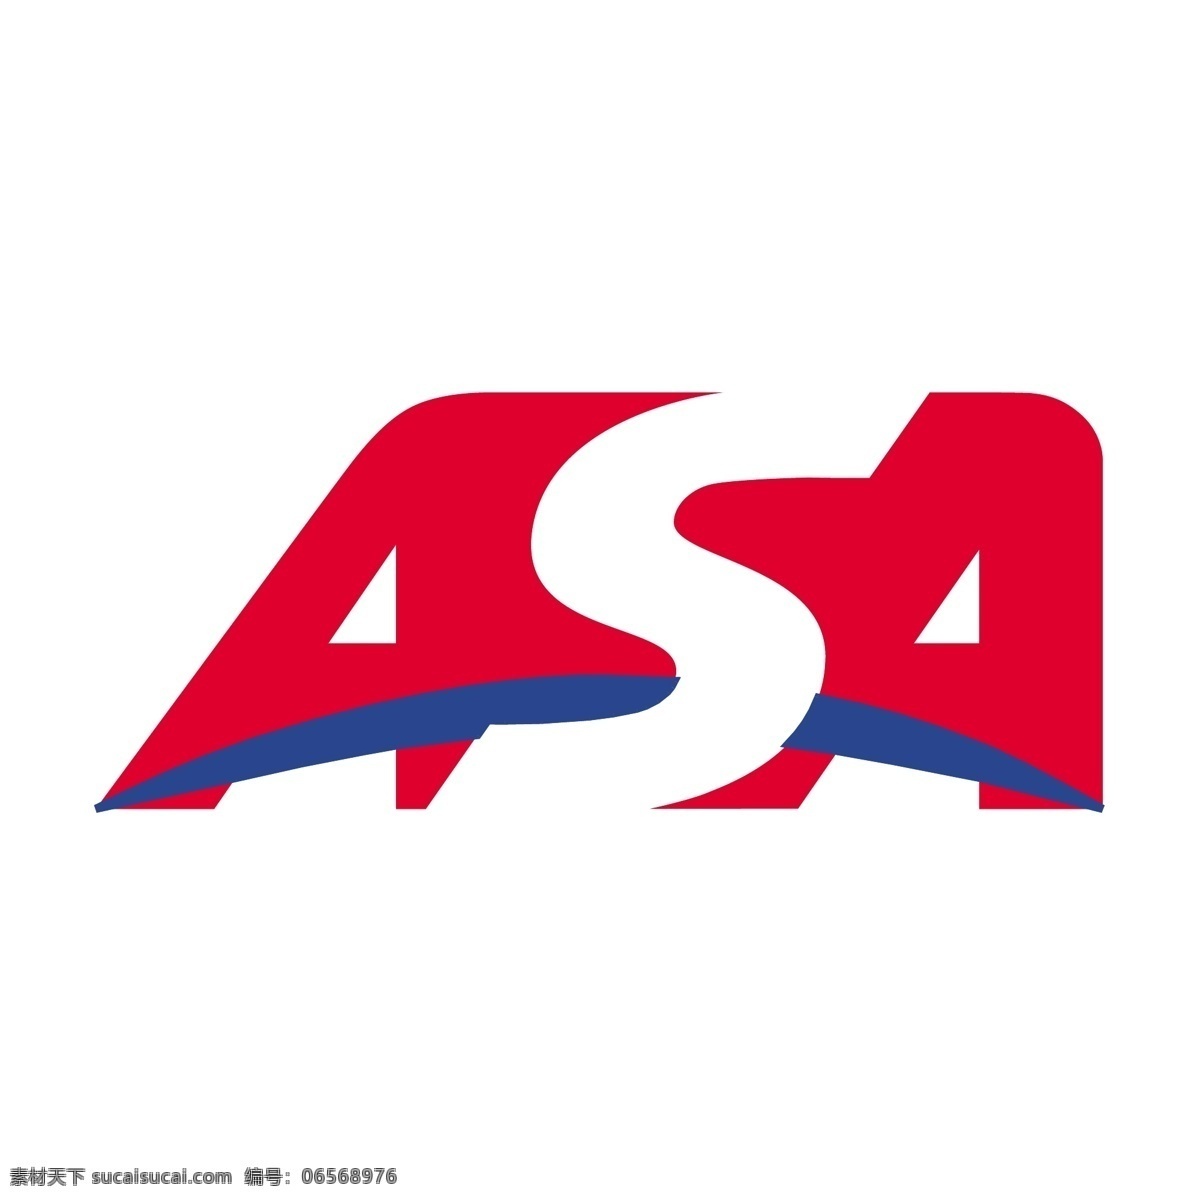 asa的7 标志 自由 asa asa载体 kabataan 帕 格 奥 萨 ng 巴彦 向量作为标志 矢量 工业公司 矢量图 建筑家居